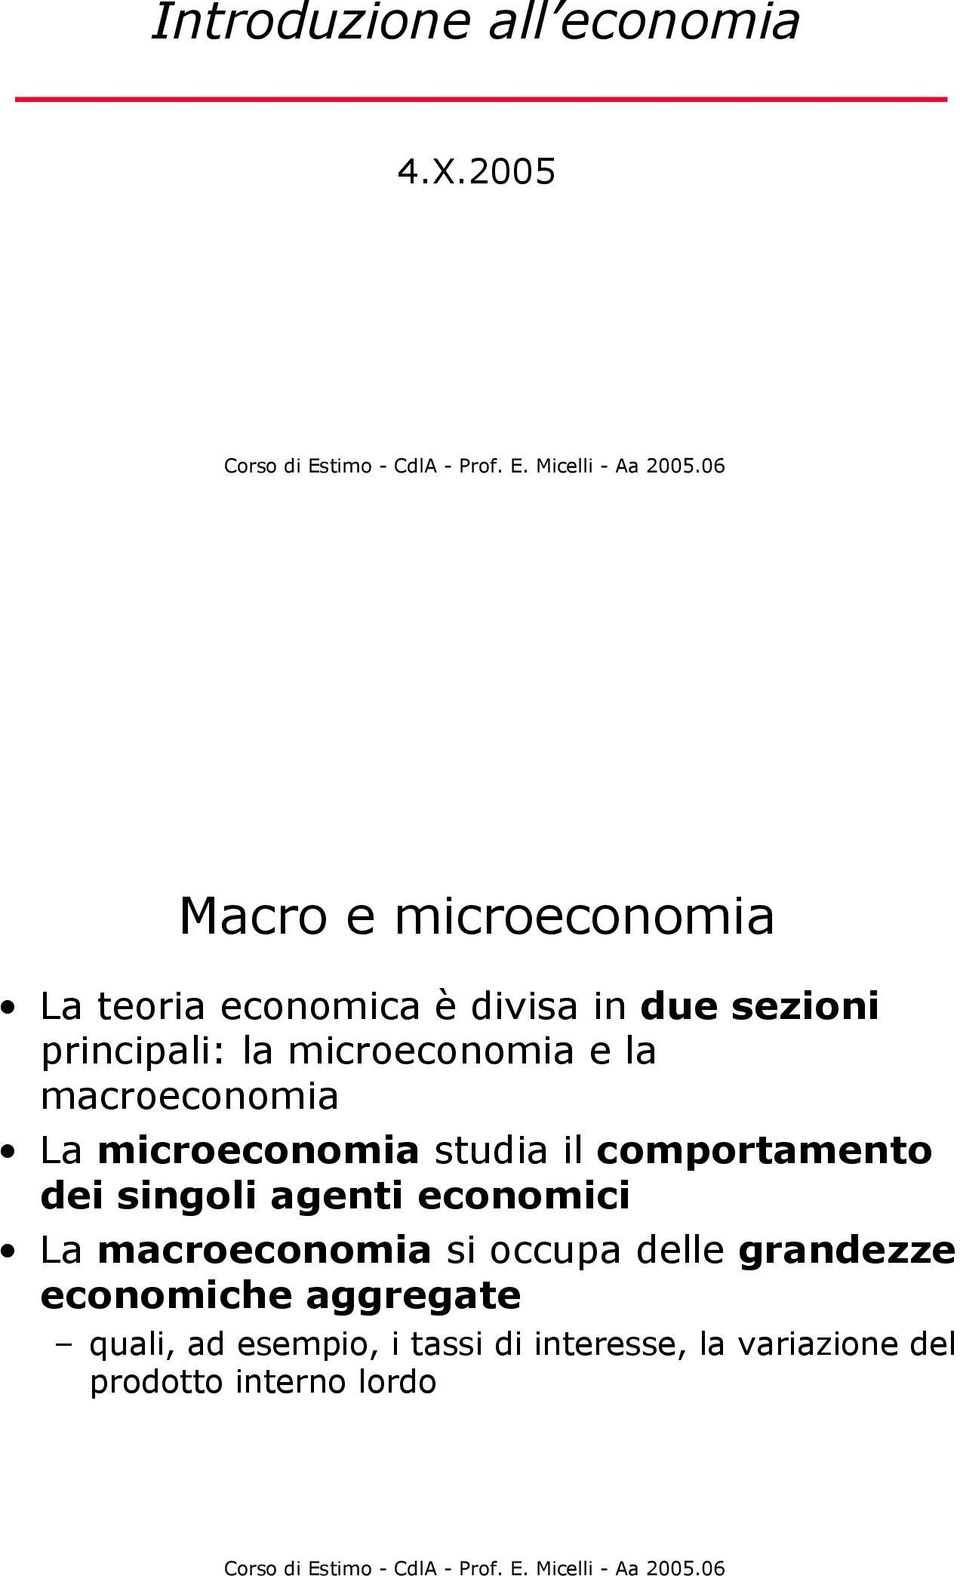 microeconomia e la macroeconomia La microeconomia studia il comportamento dei singoli